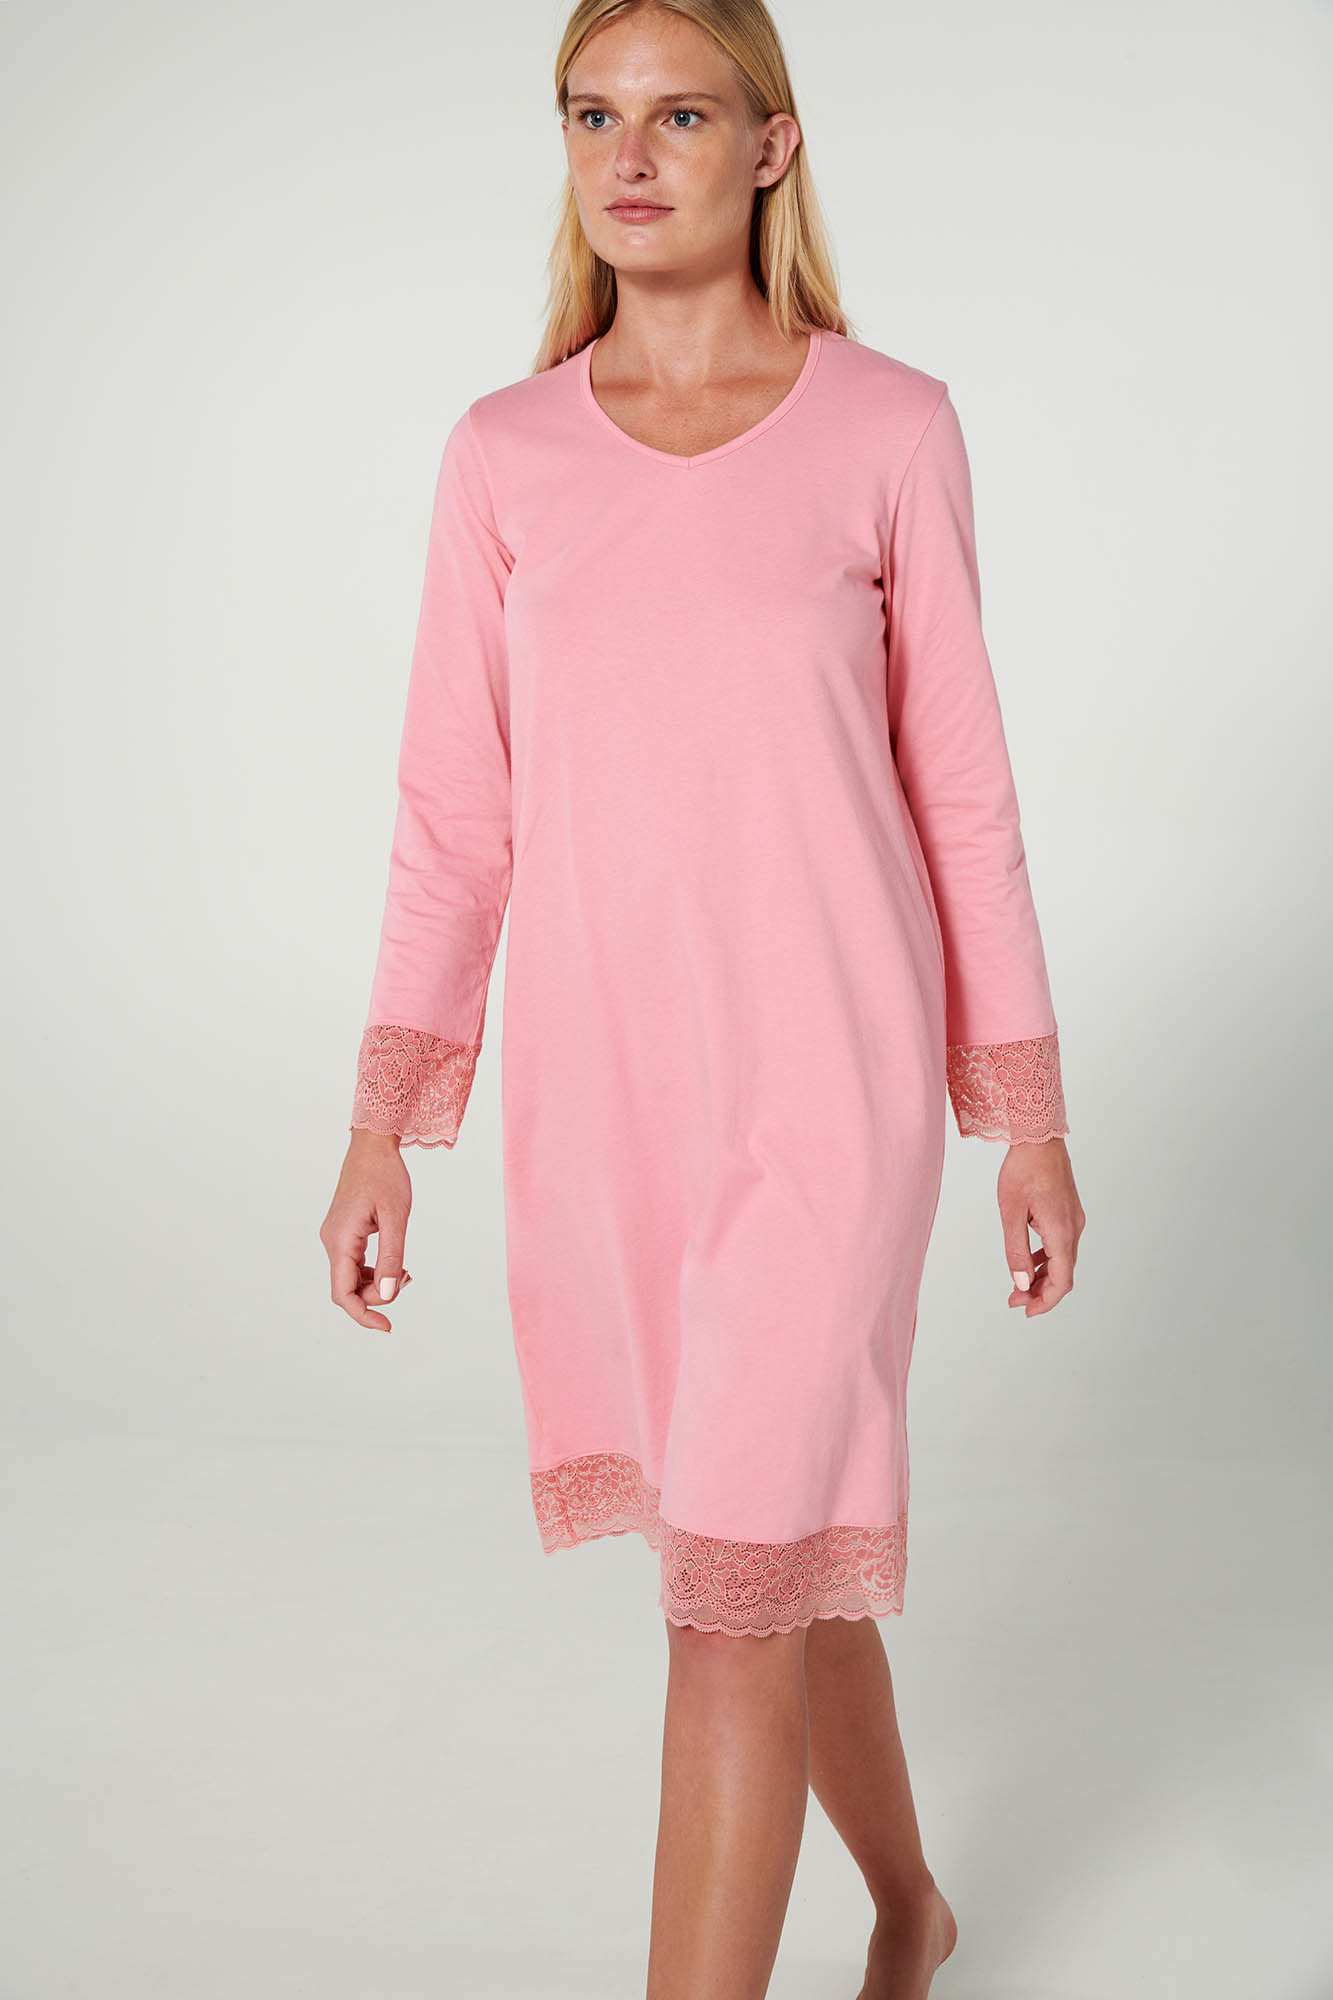 Vamp - Noční košile s krajkou 19907 - Vamp pink blush XXL